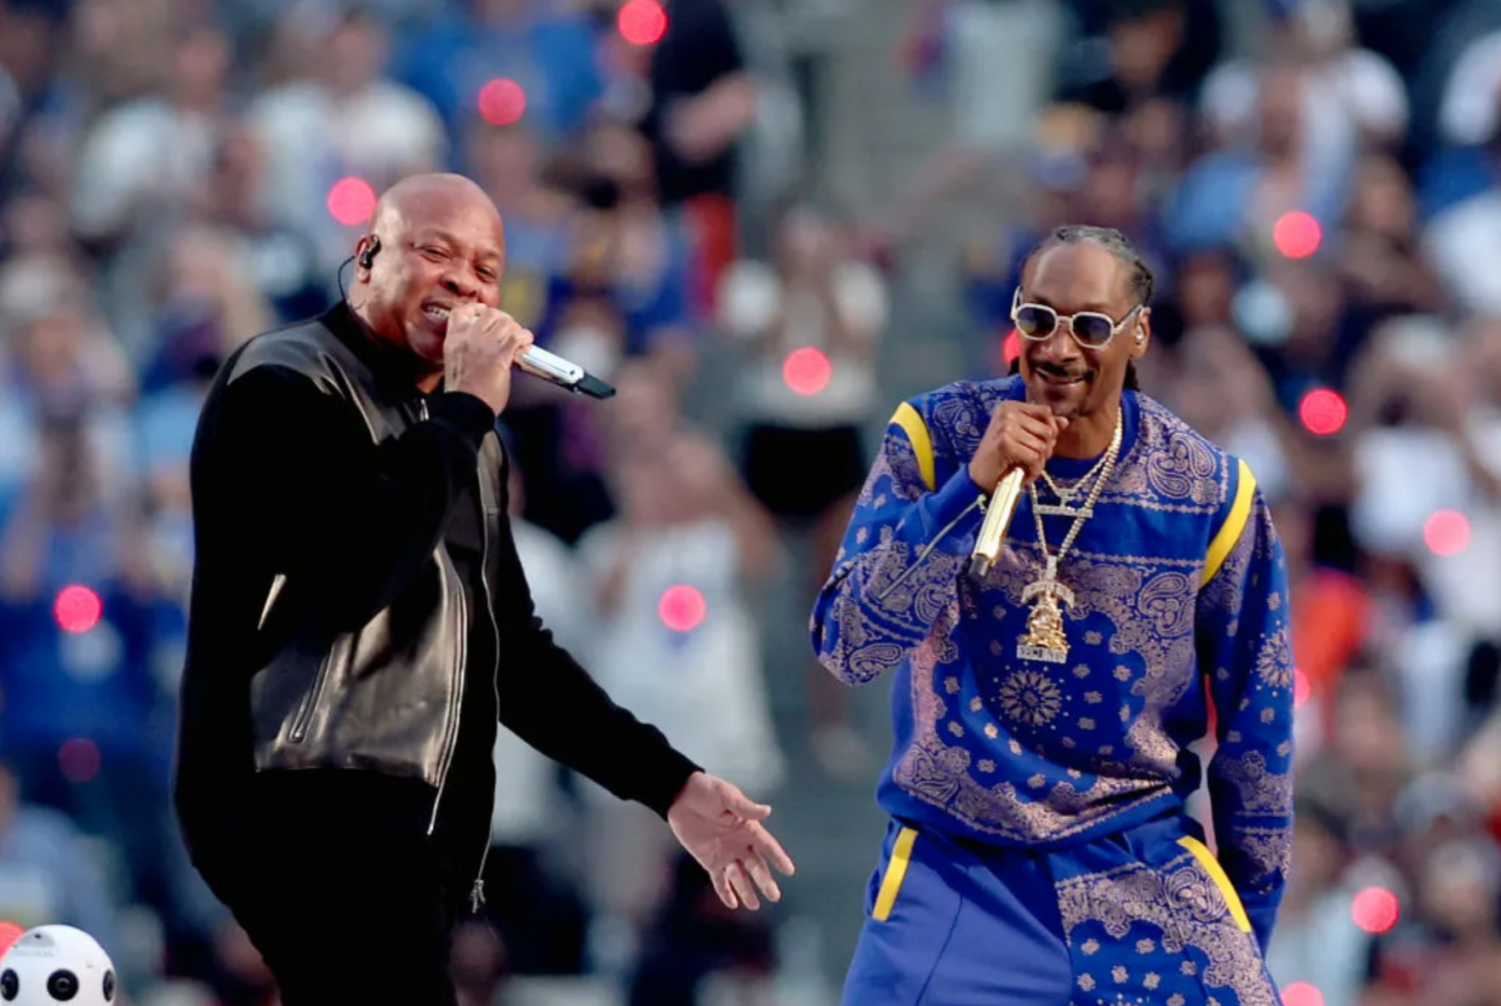 Super Bowl halftime show - Social media lights up for Dr. Dre